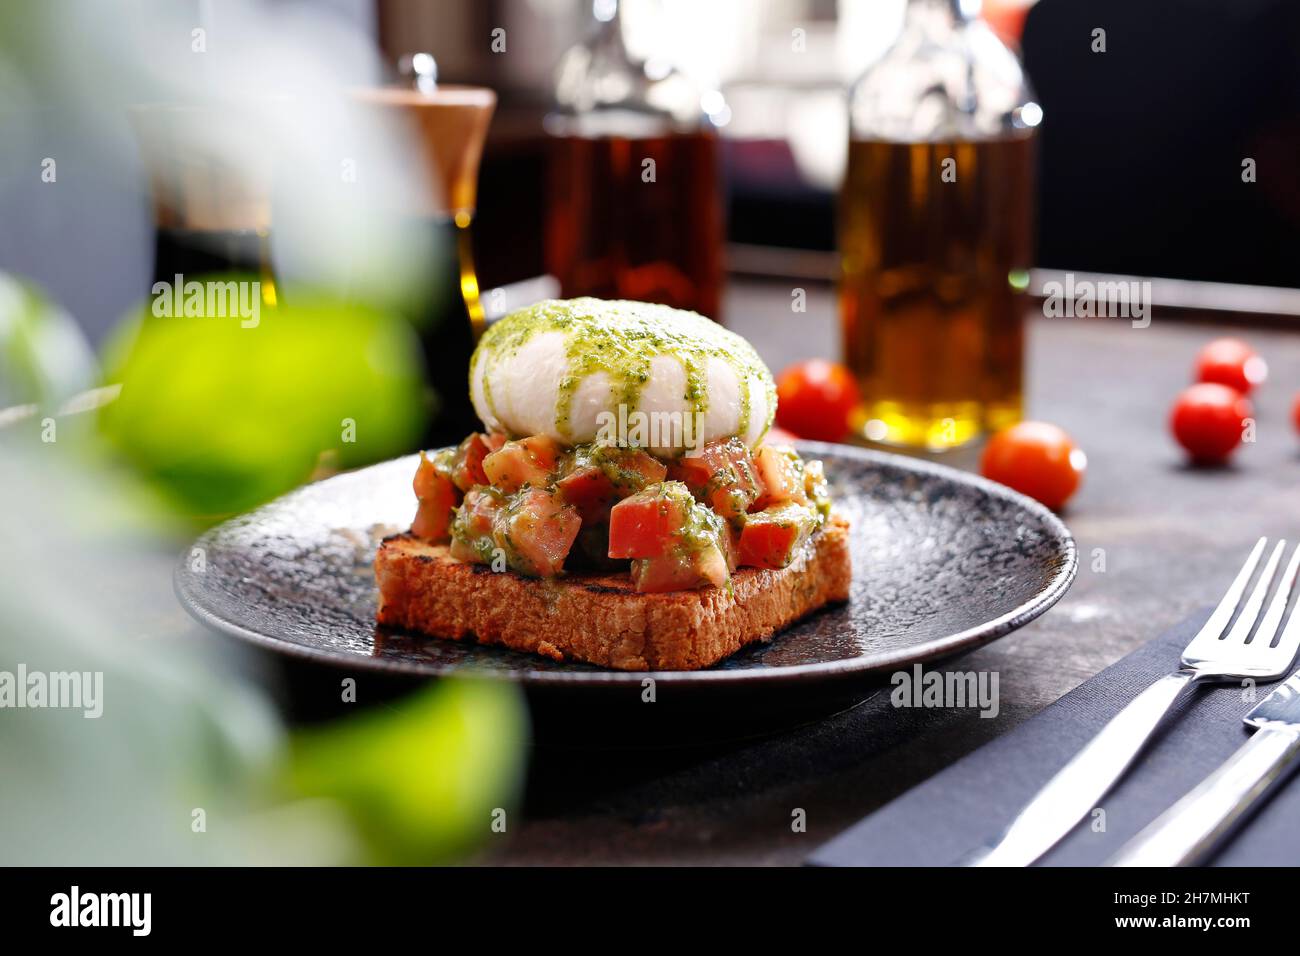 Bruschetta avec burrata et pesto au basilic.Plat appétissant.Photographie culinaire, une proposition de servir un repas. Banque D'Images